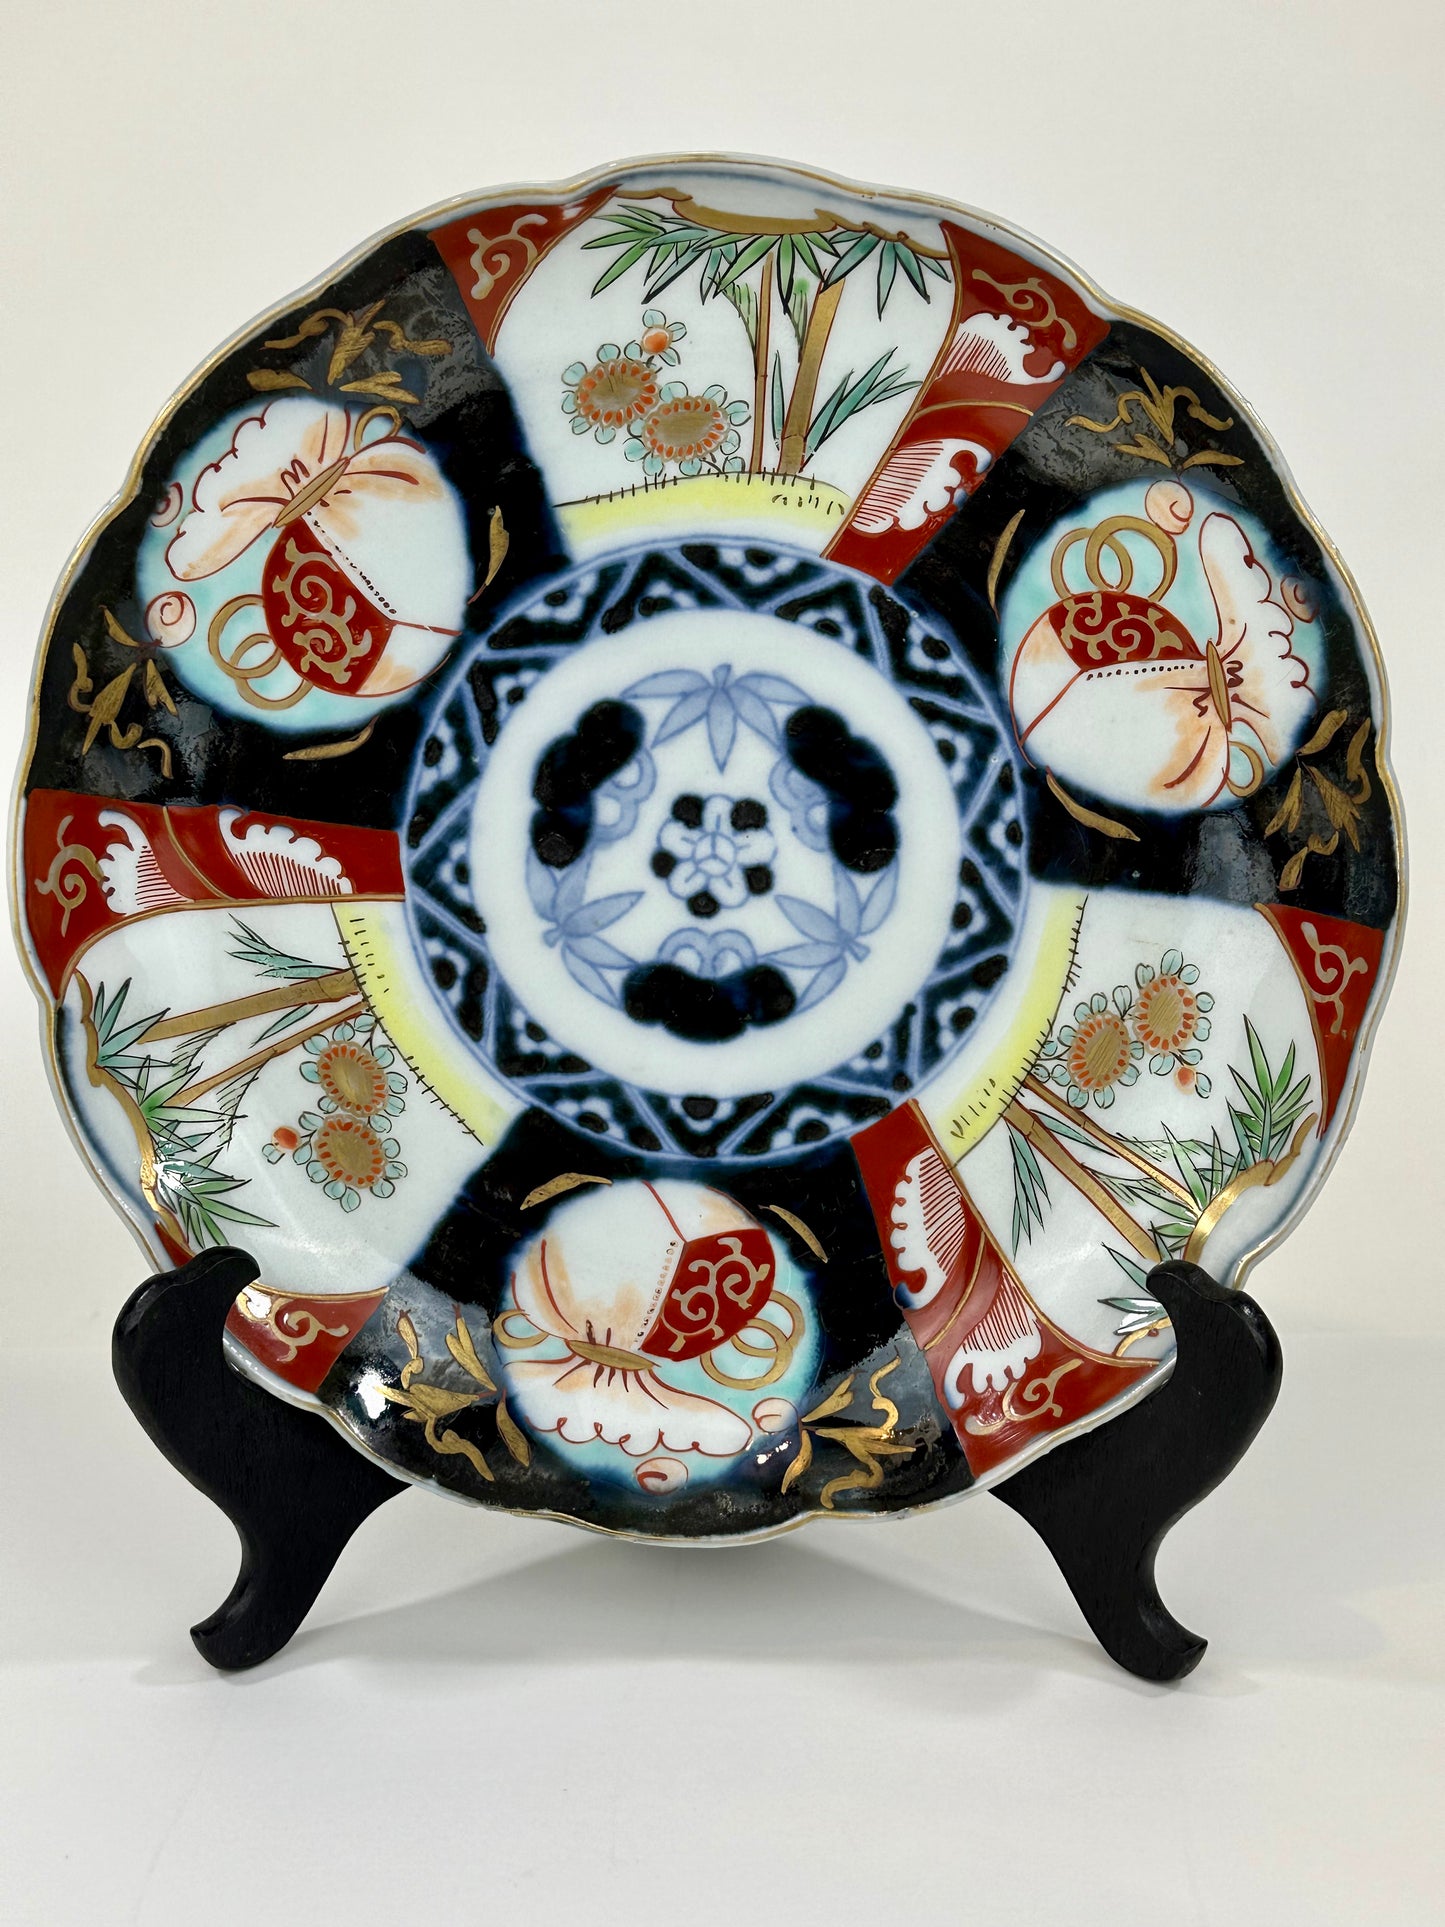 Antique Japanese Edo Era 19th Century Imari Ceramic Plate 9.5"